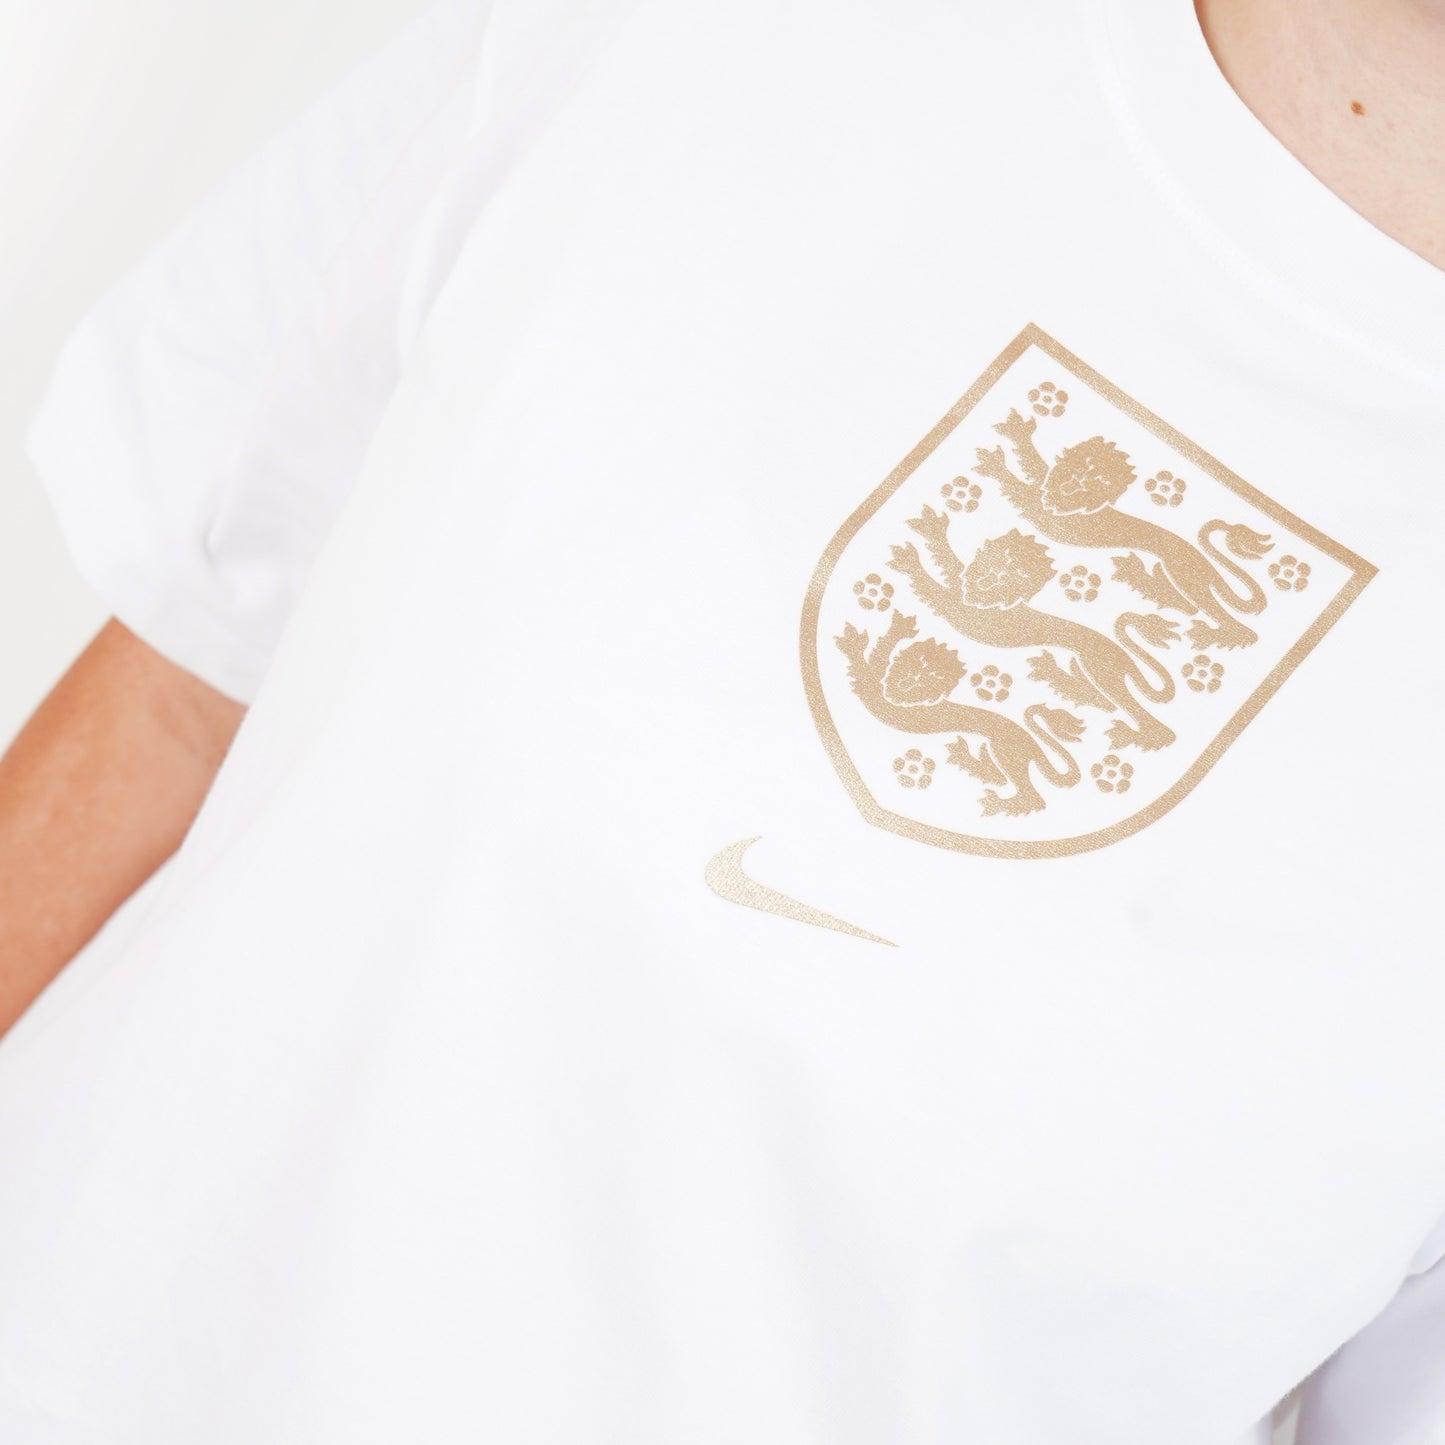 England Crest Women's Nike T-Shirt